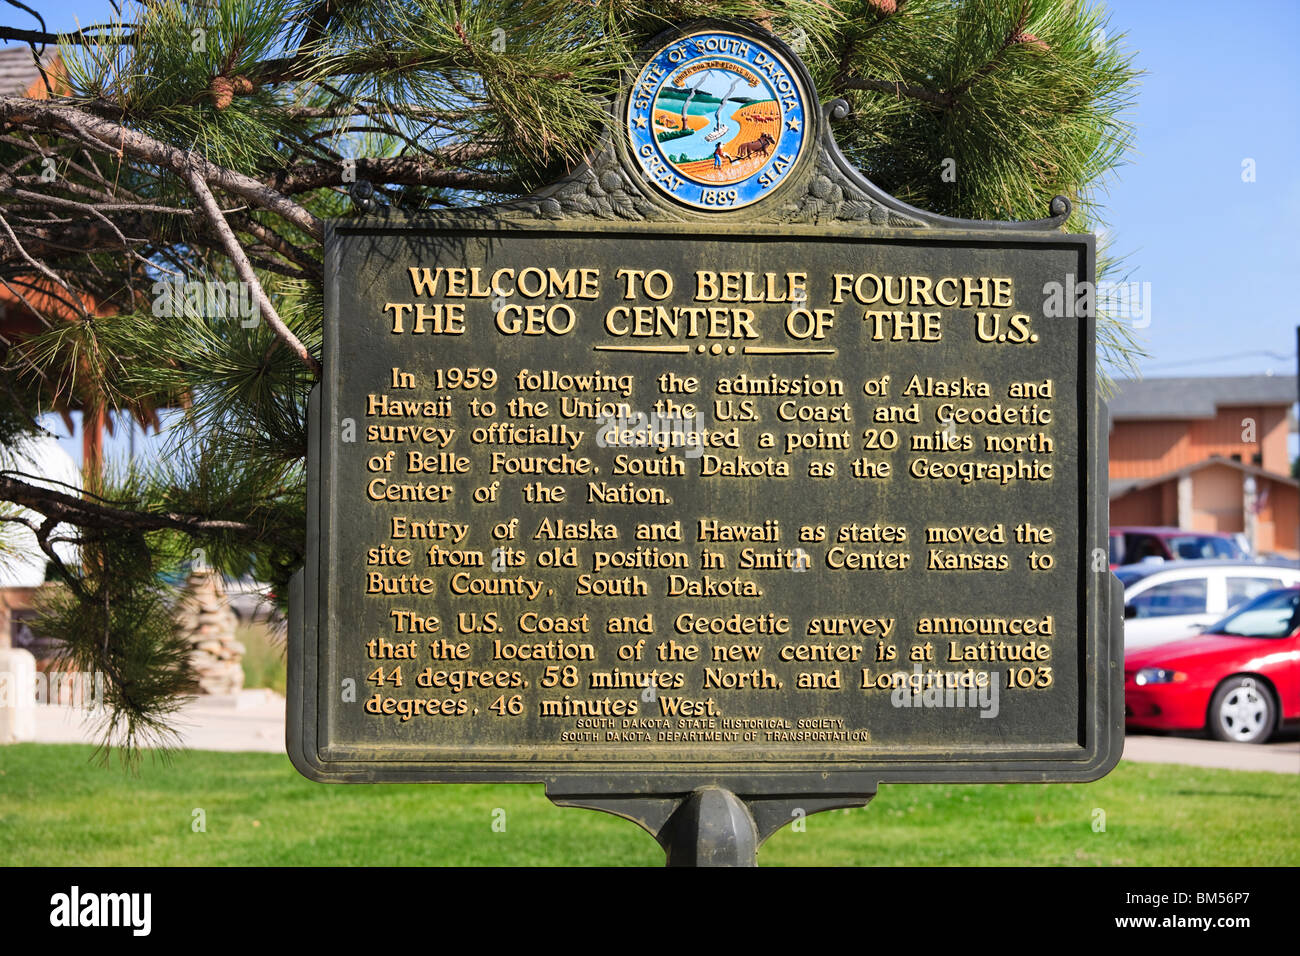 Belle Fourche South Dakota SD geografischen geografische Zentrum Zentrum des Landes. Vereinigte Staaten Vereinigte Staaten von Amerika USA-USA. Stockfoto